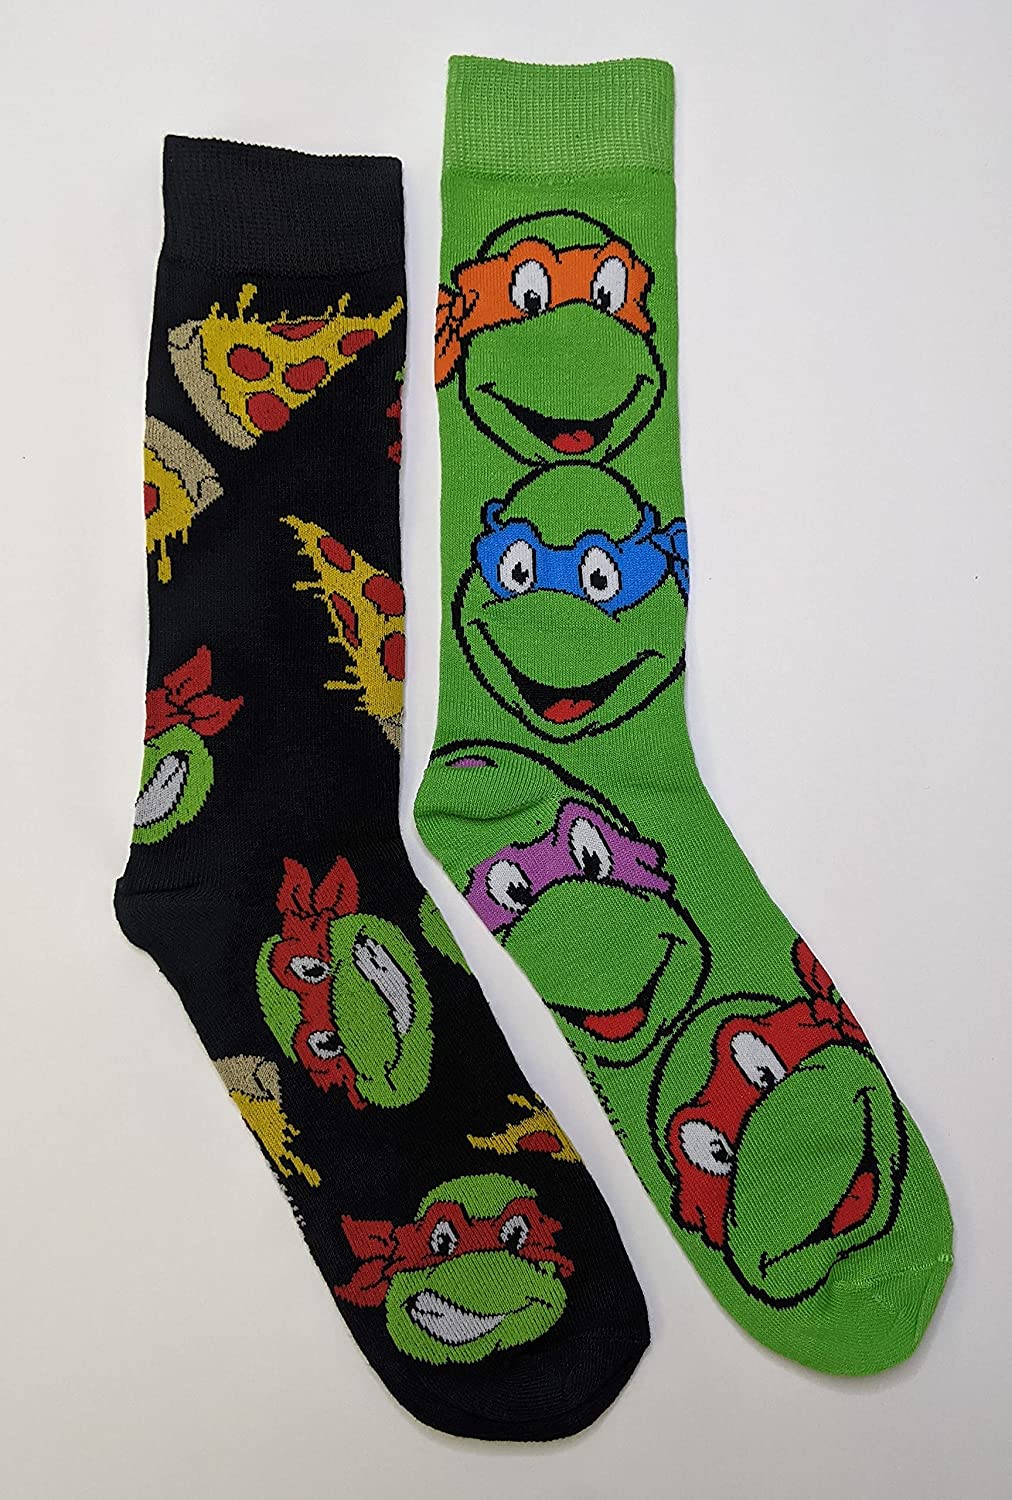 Nickelodeon Teenage Mutant Ninja Turtles Pizza Men's Crew Socks Two Pair Pack